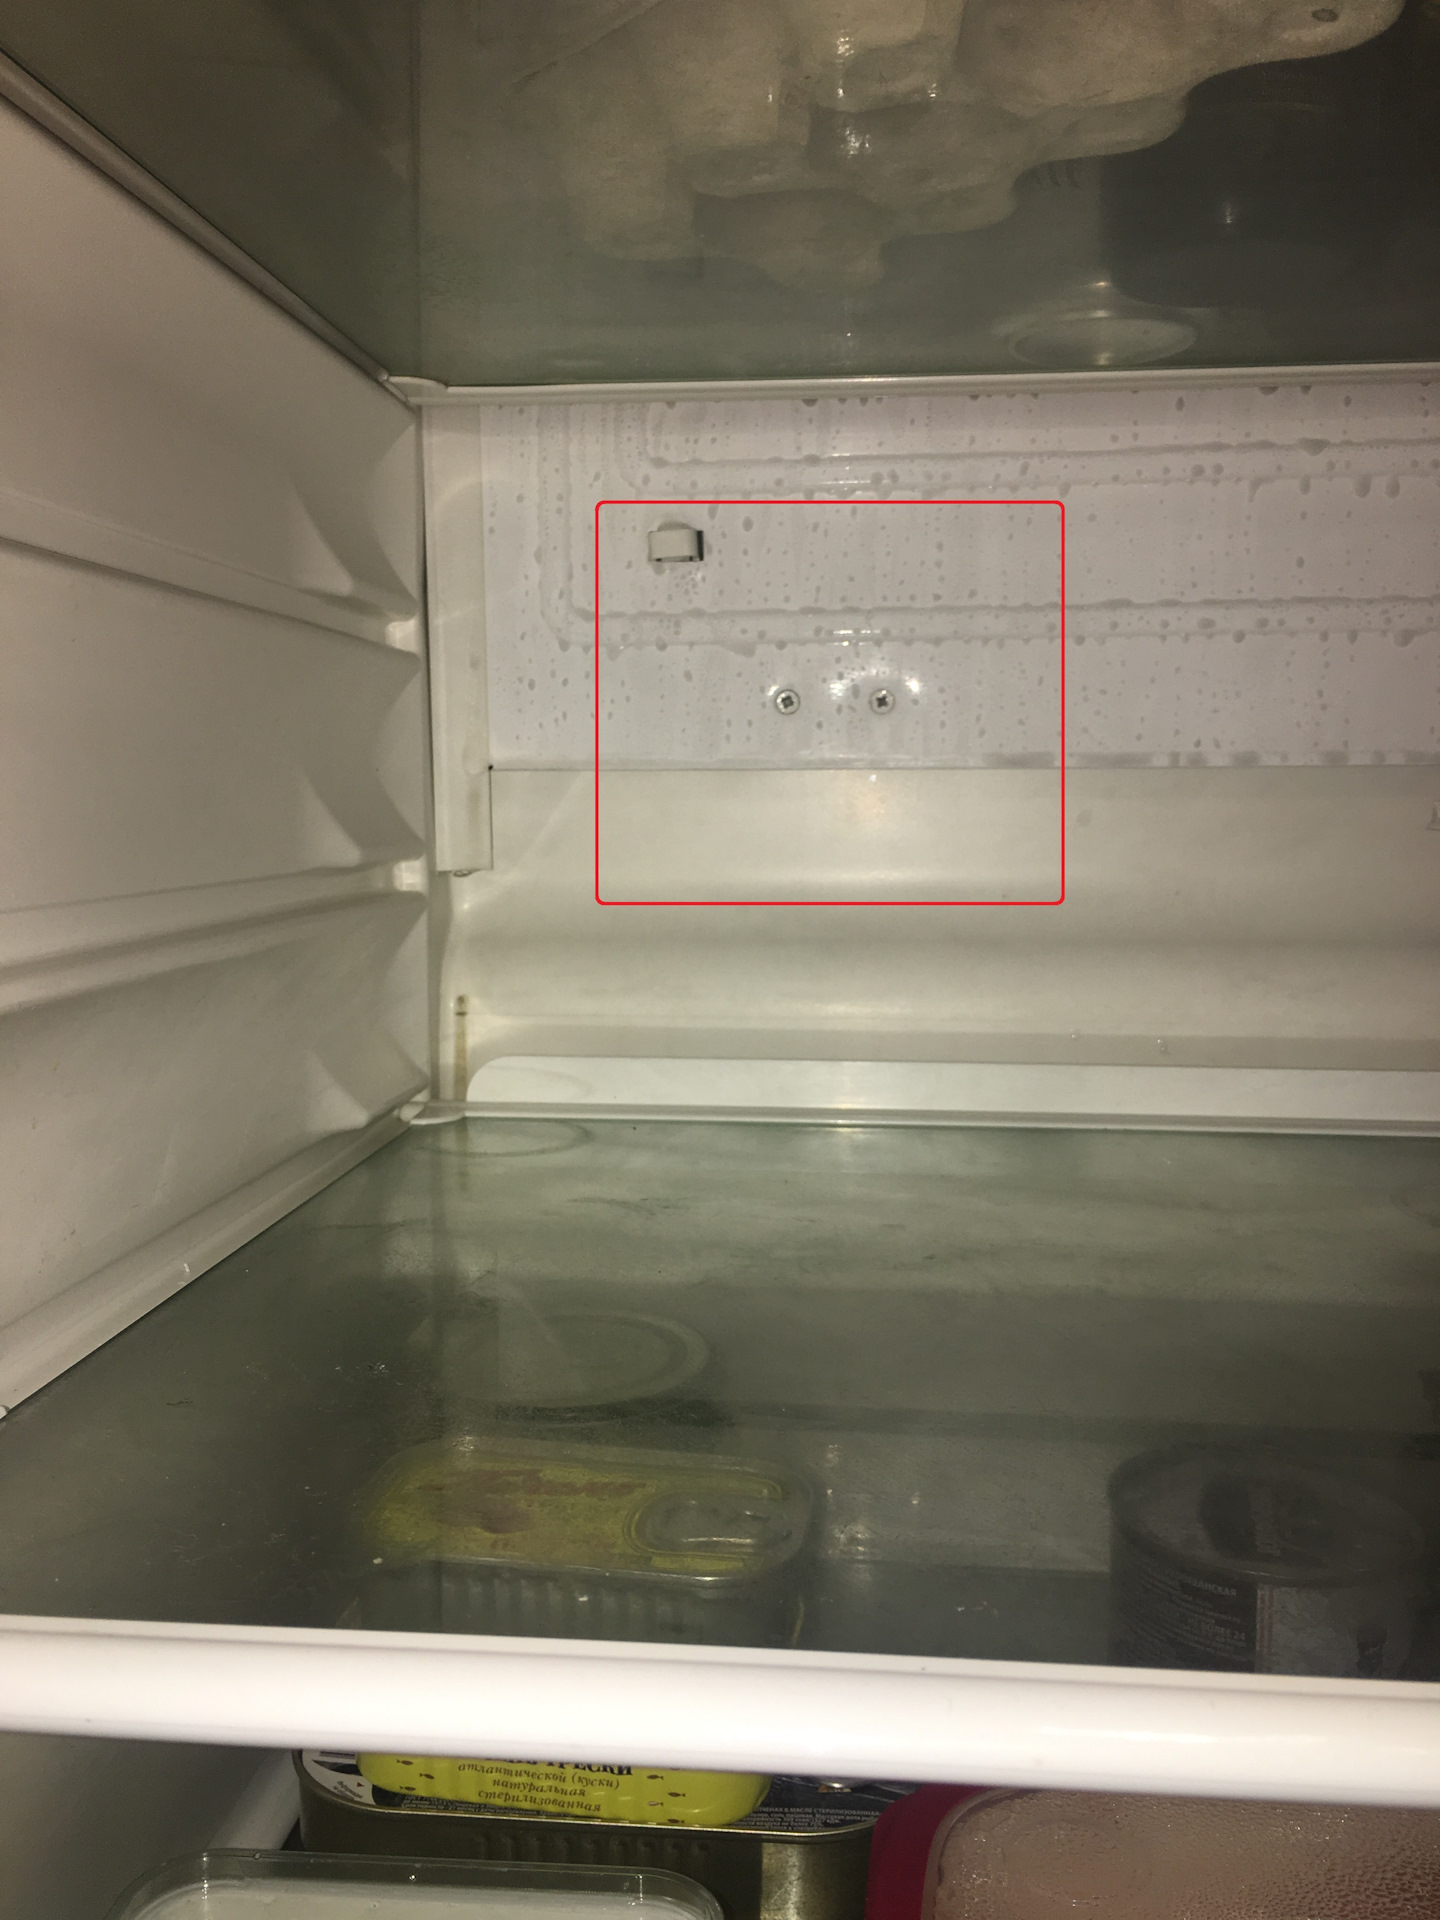 ремонт полок в холодильнике своими руками